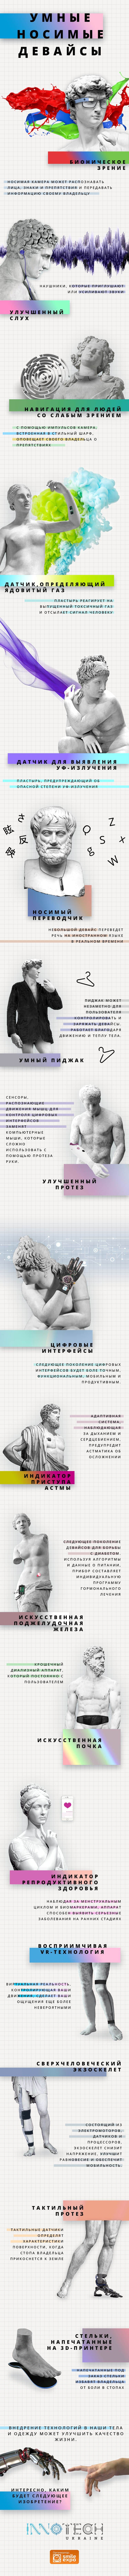 InnoTech Ukraine. Умные носимые девайсы. Инфографика